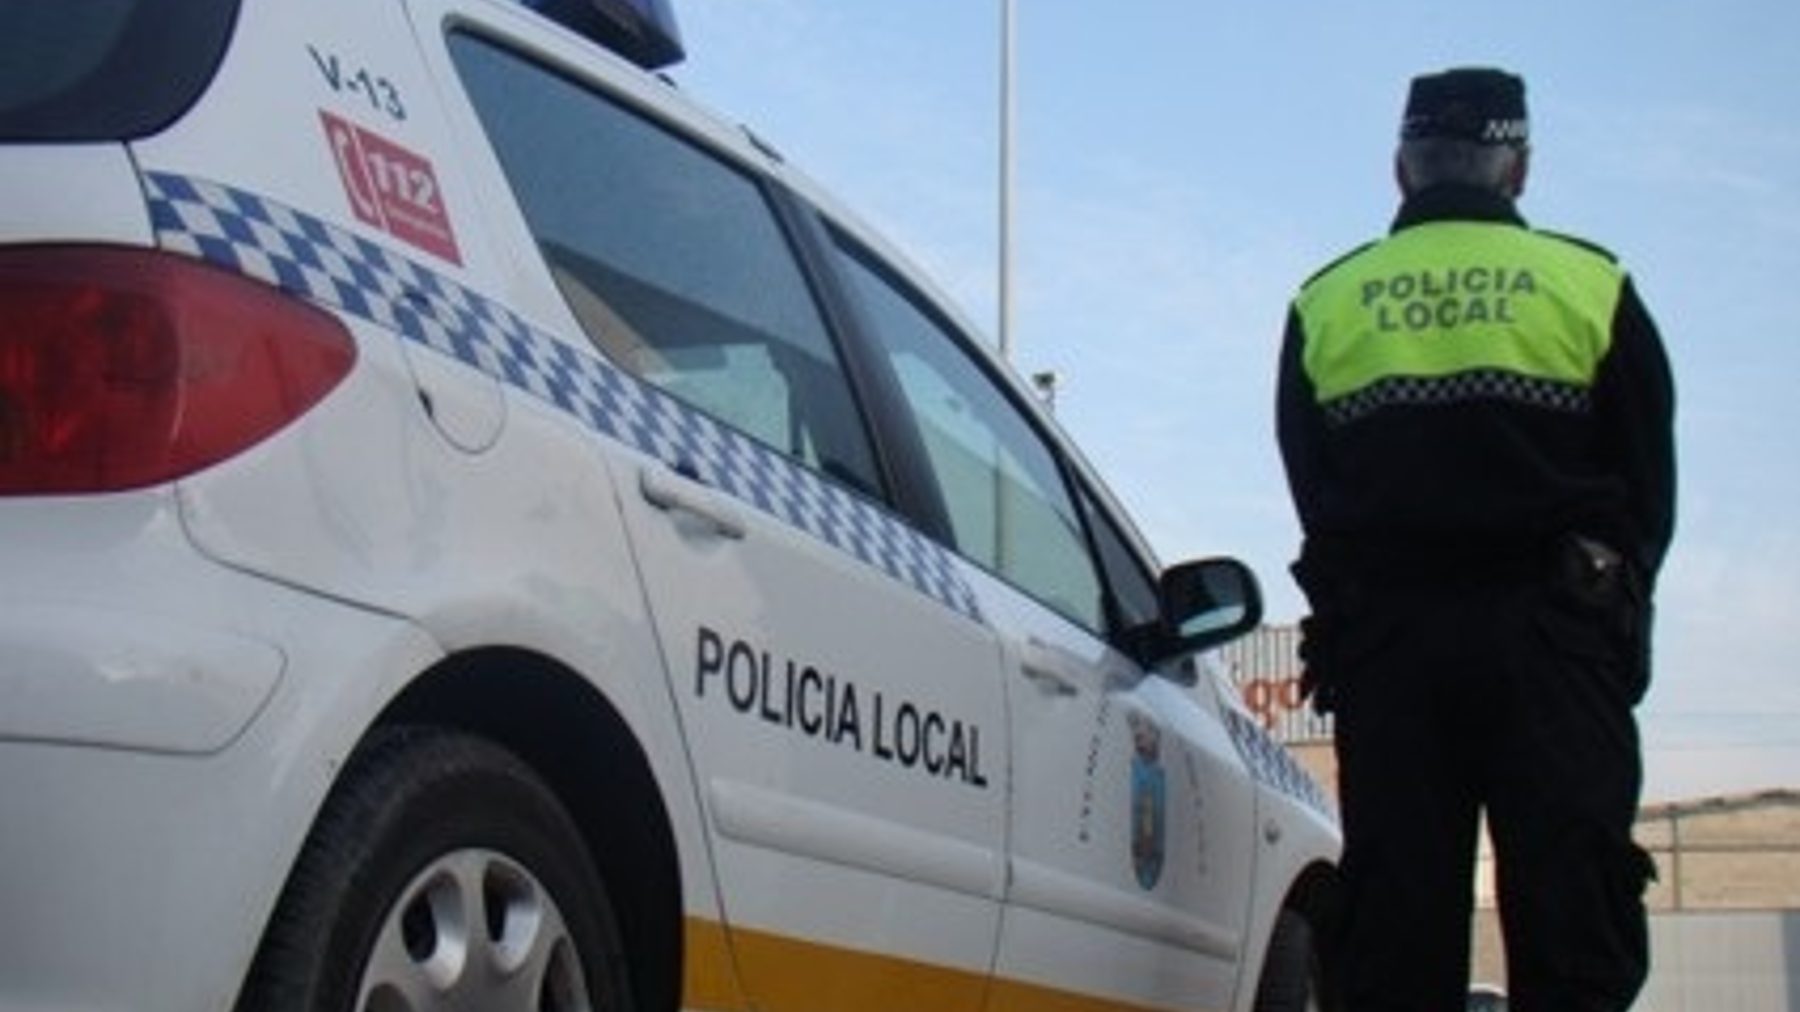 Policía Local de Chiclana de la Frontera, Cádiz (AYTO. DE CHICLANA).